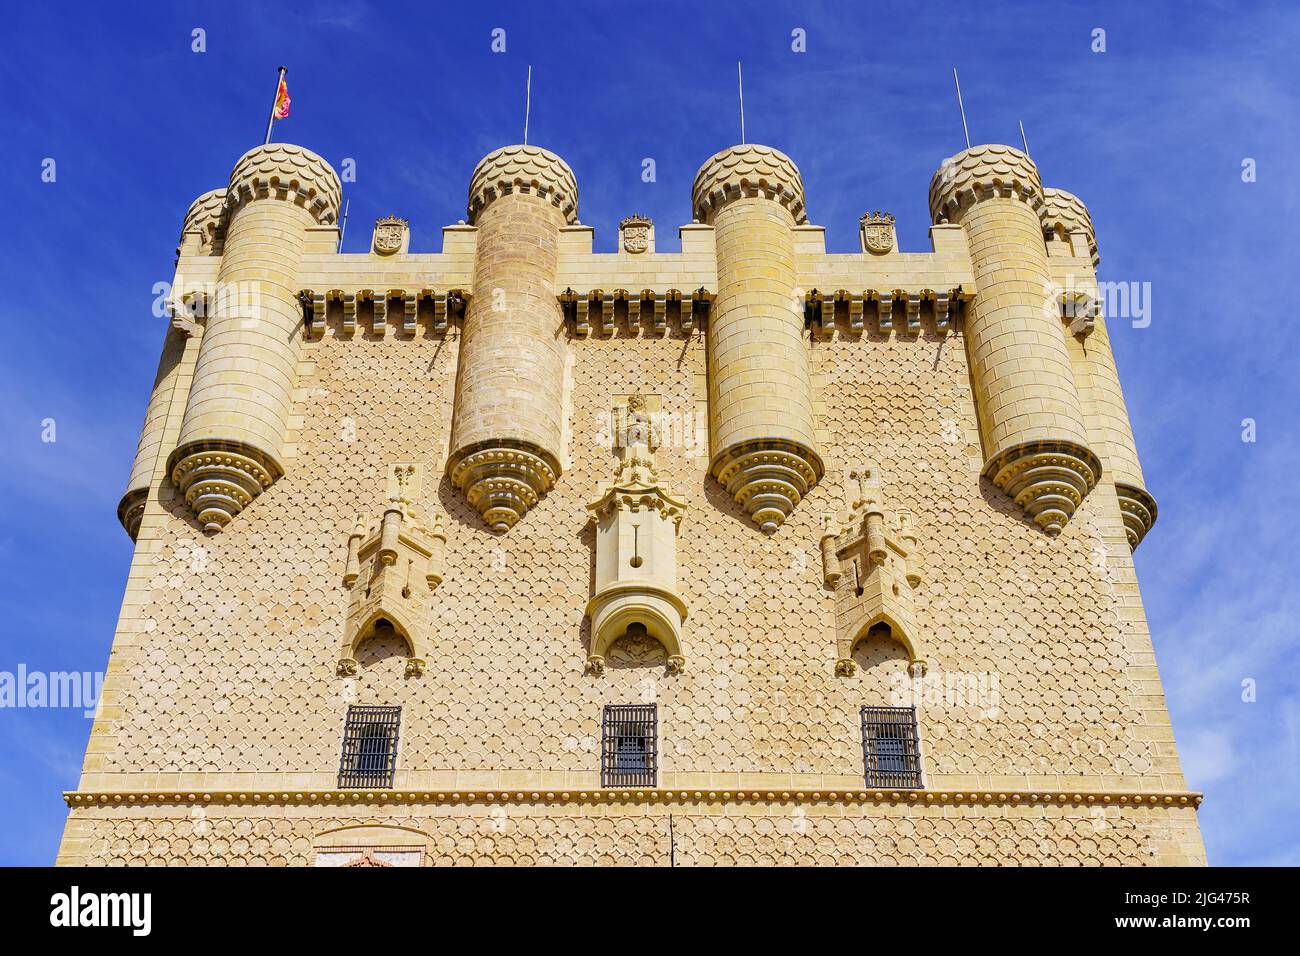 Facciata principale del castello di Alcazar a Segovia, un sito patrimonio dell'umanità, Spagna. Foto Stock